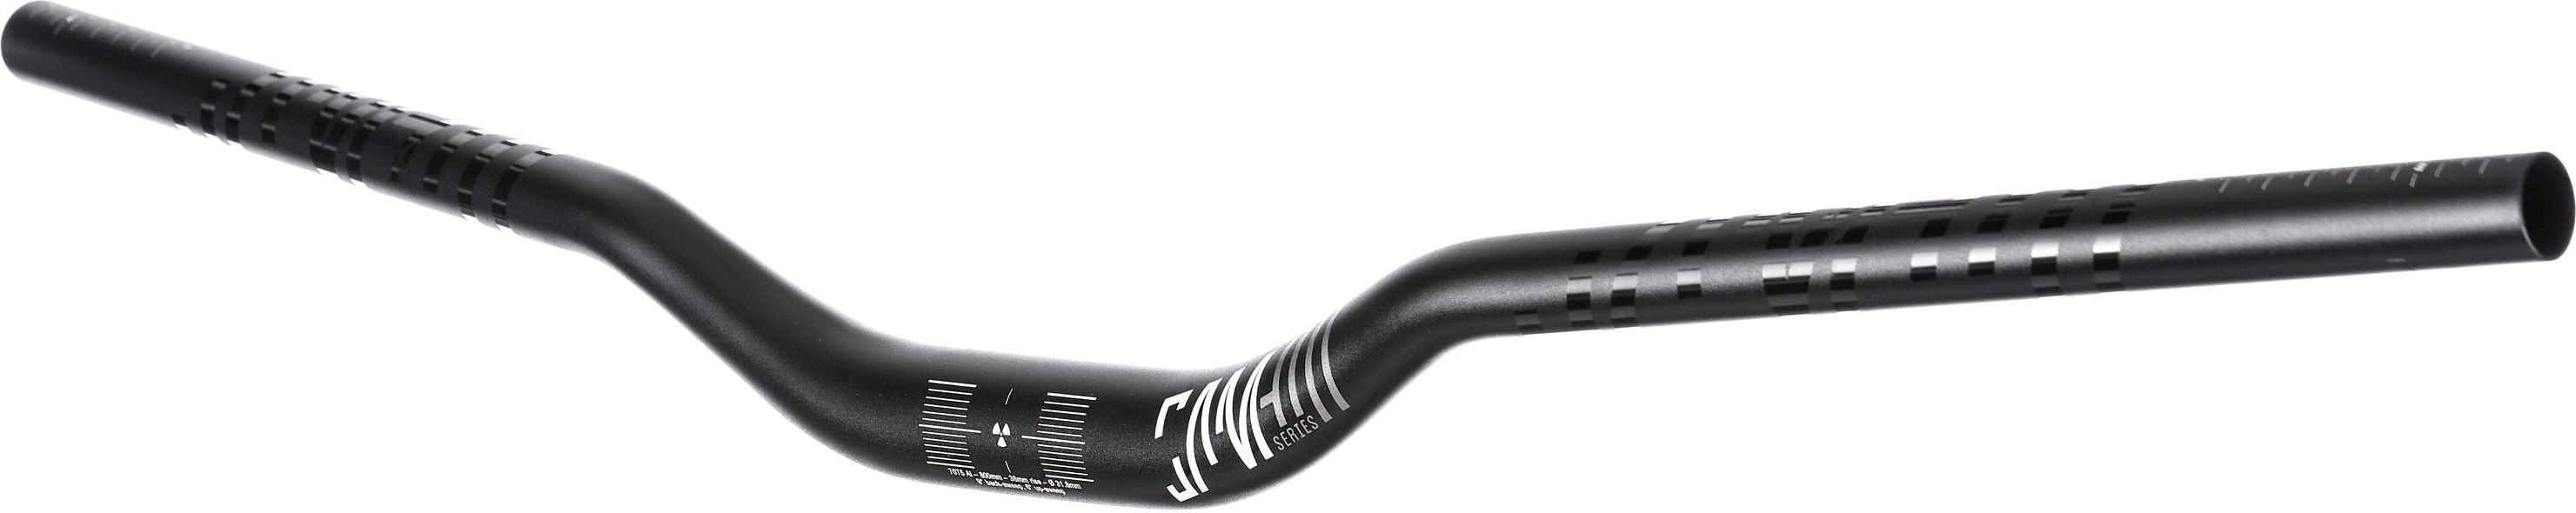 Colnago Fork Headset Expander - Black - 1.1/8  Black